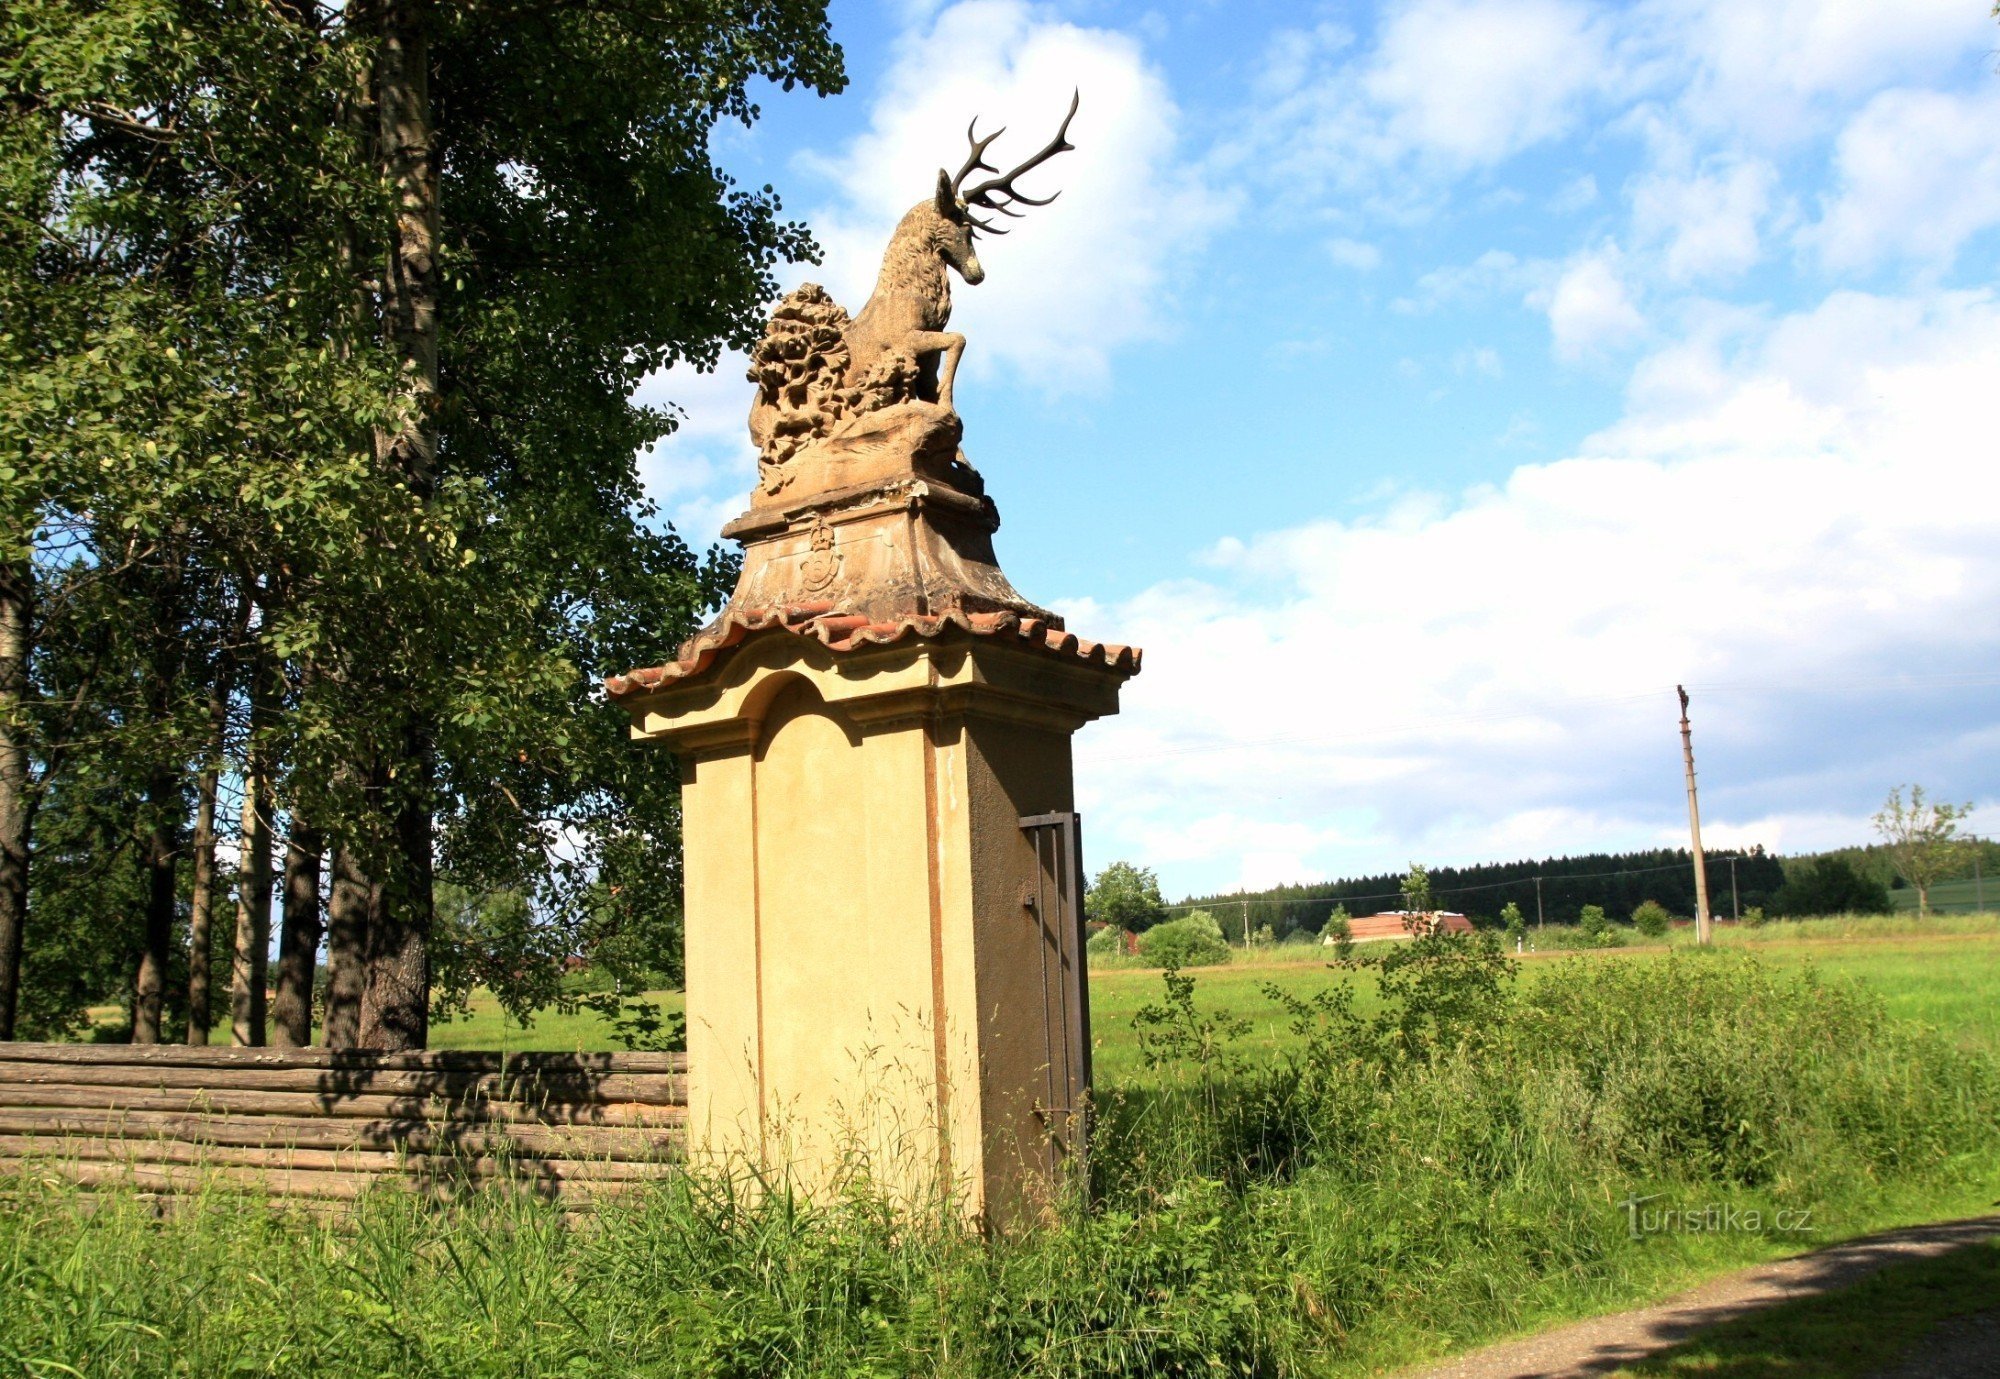 Statuie de cerb în poarta de intrare